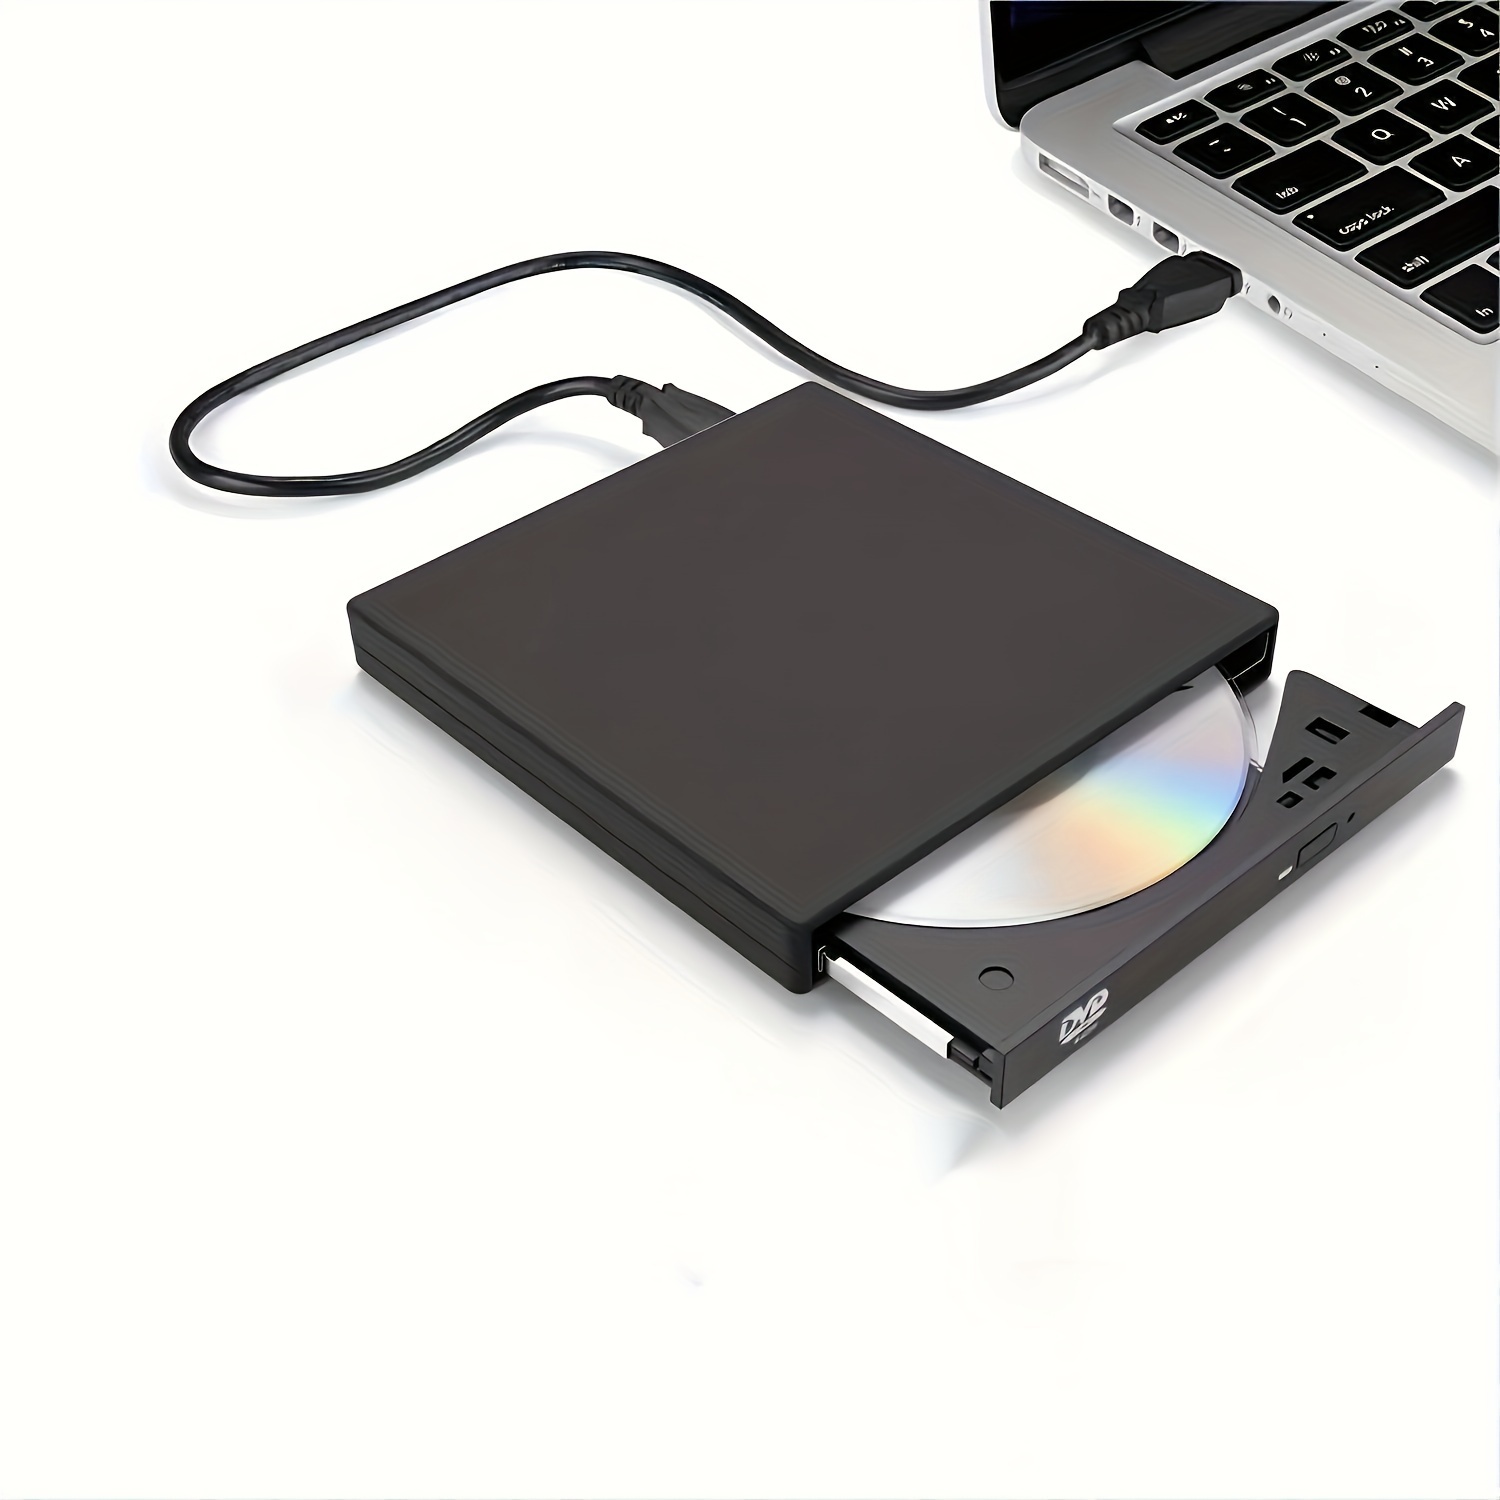 La disquetera externa USB (Windows) Parte 1 de 2 